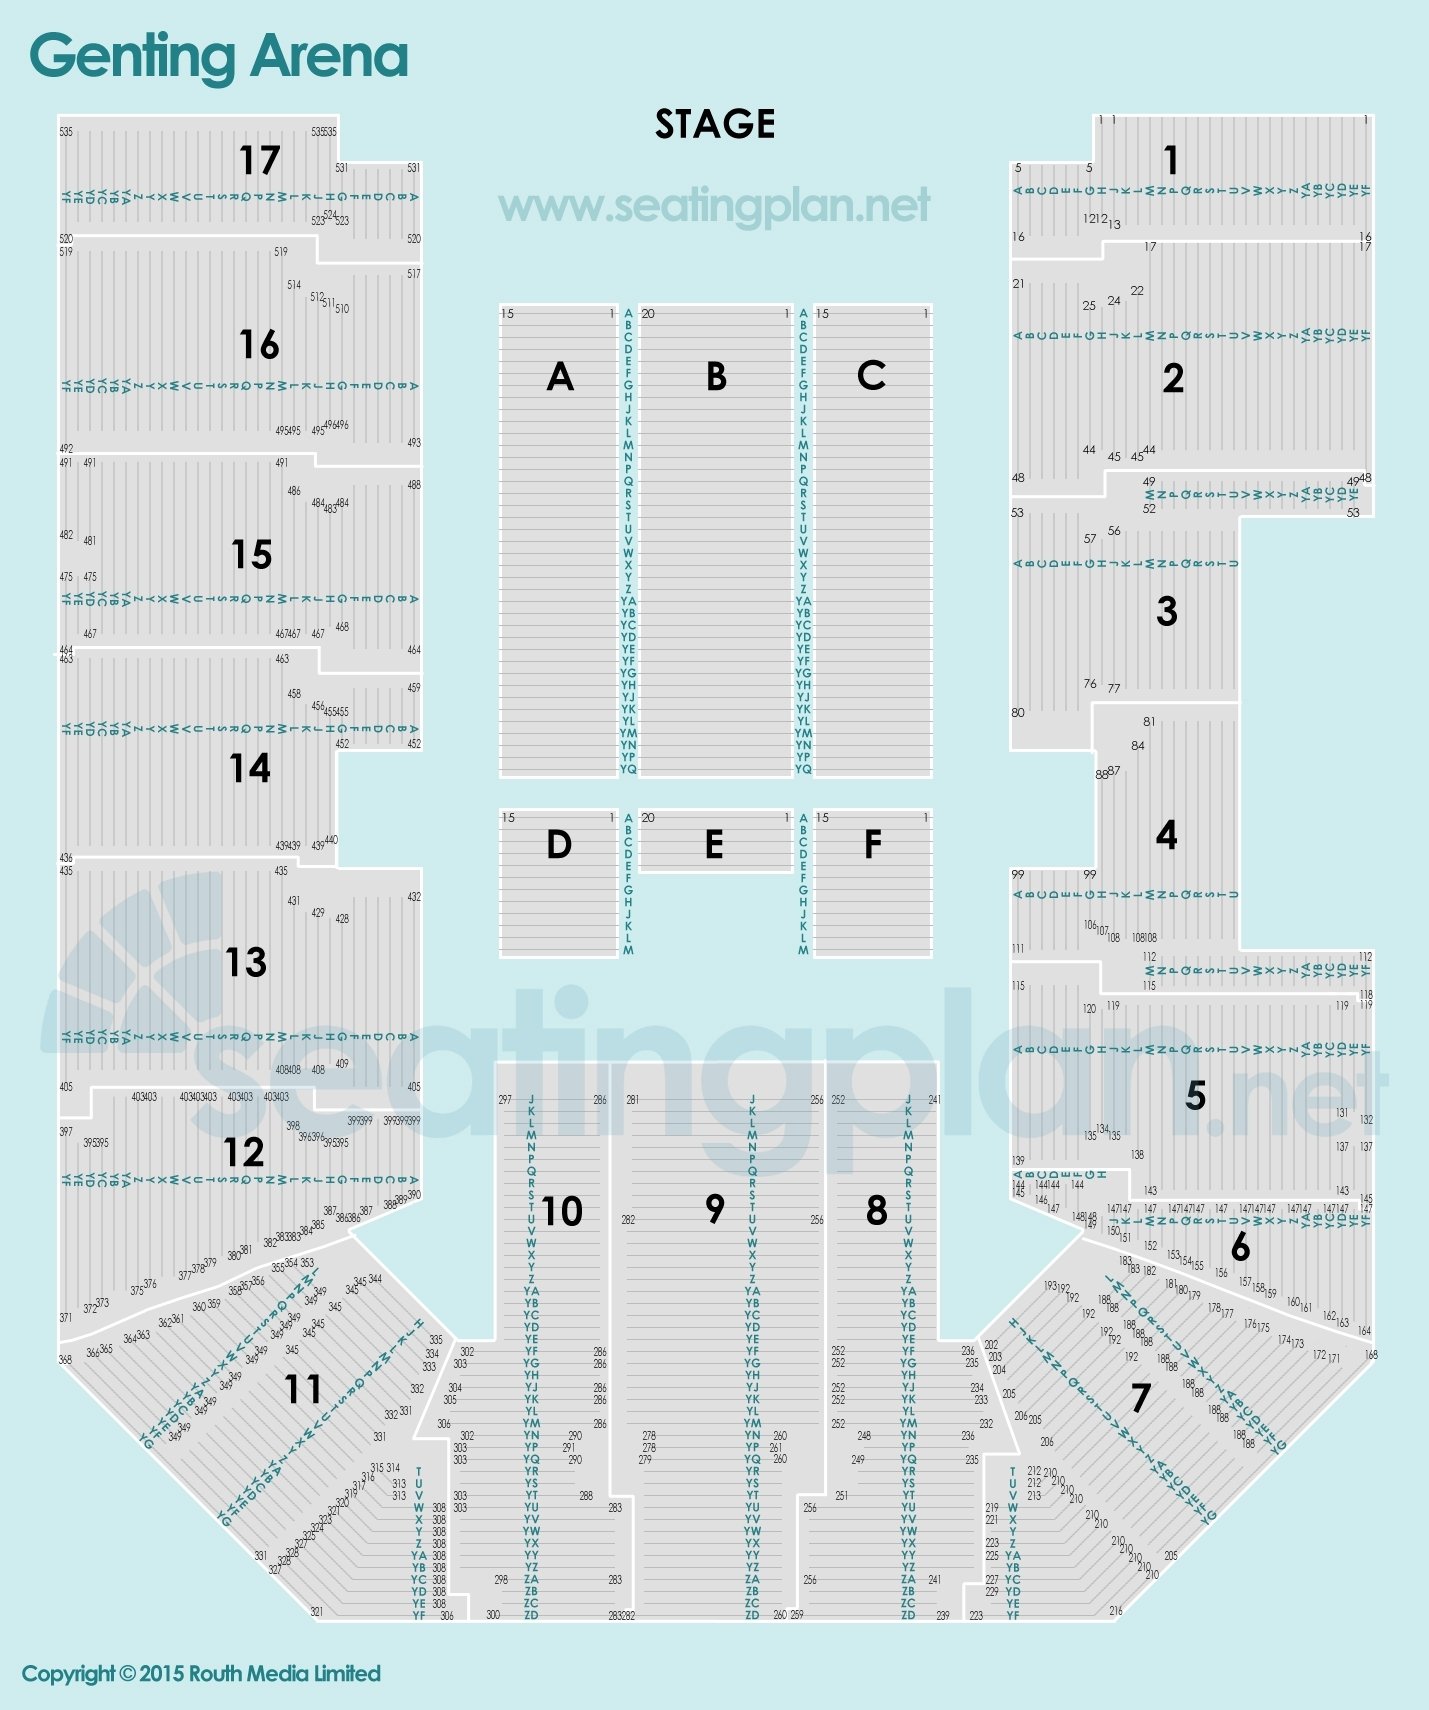 detailed Seating Plan at Resorts World Arena